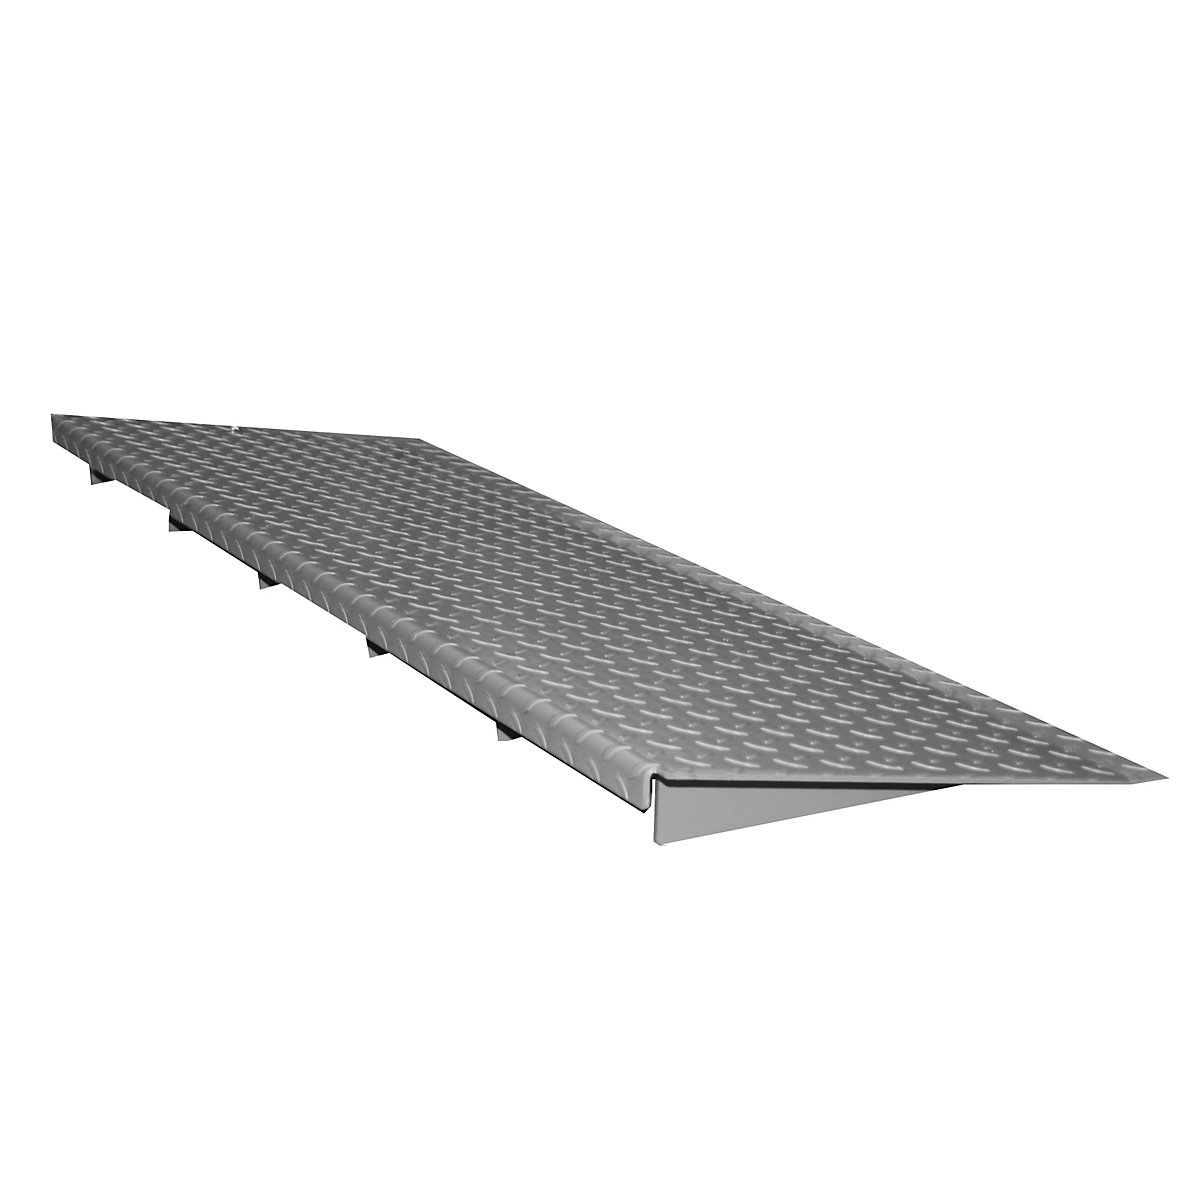 Ramp for low profile steel sump tray – eurokraft pro, depth 500 mm, max. wheel load 500 kg, width 2850 mm-3